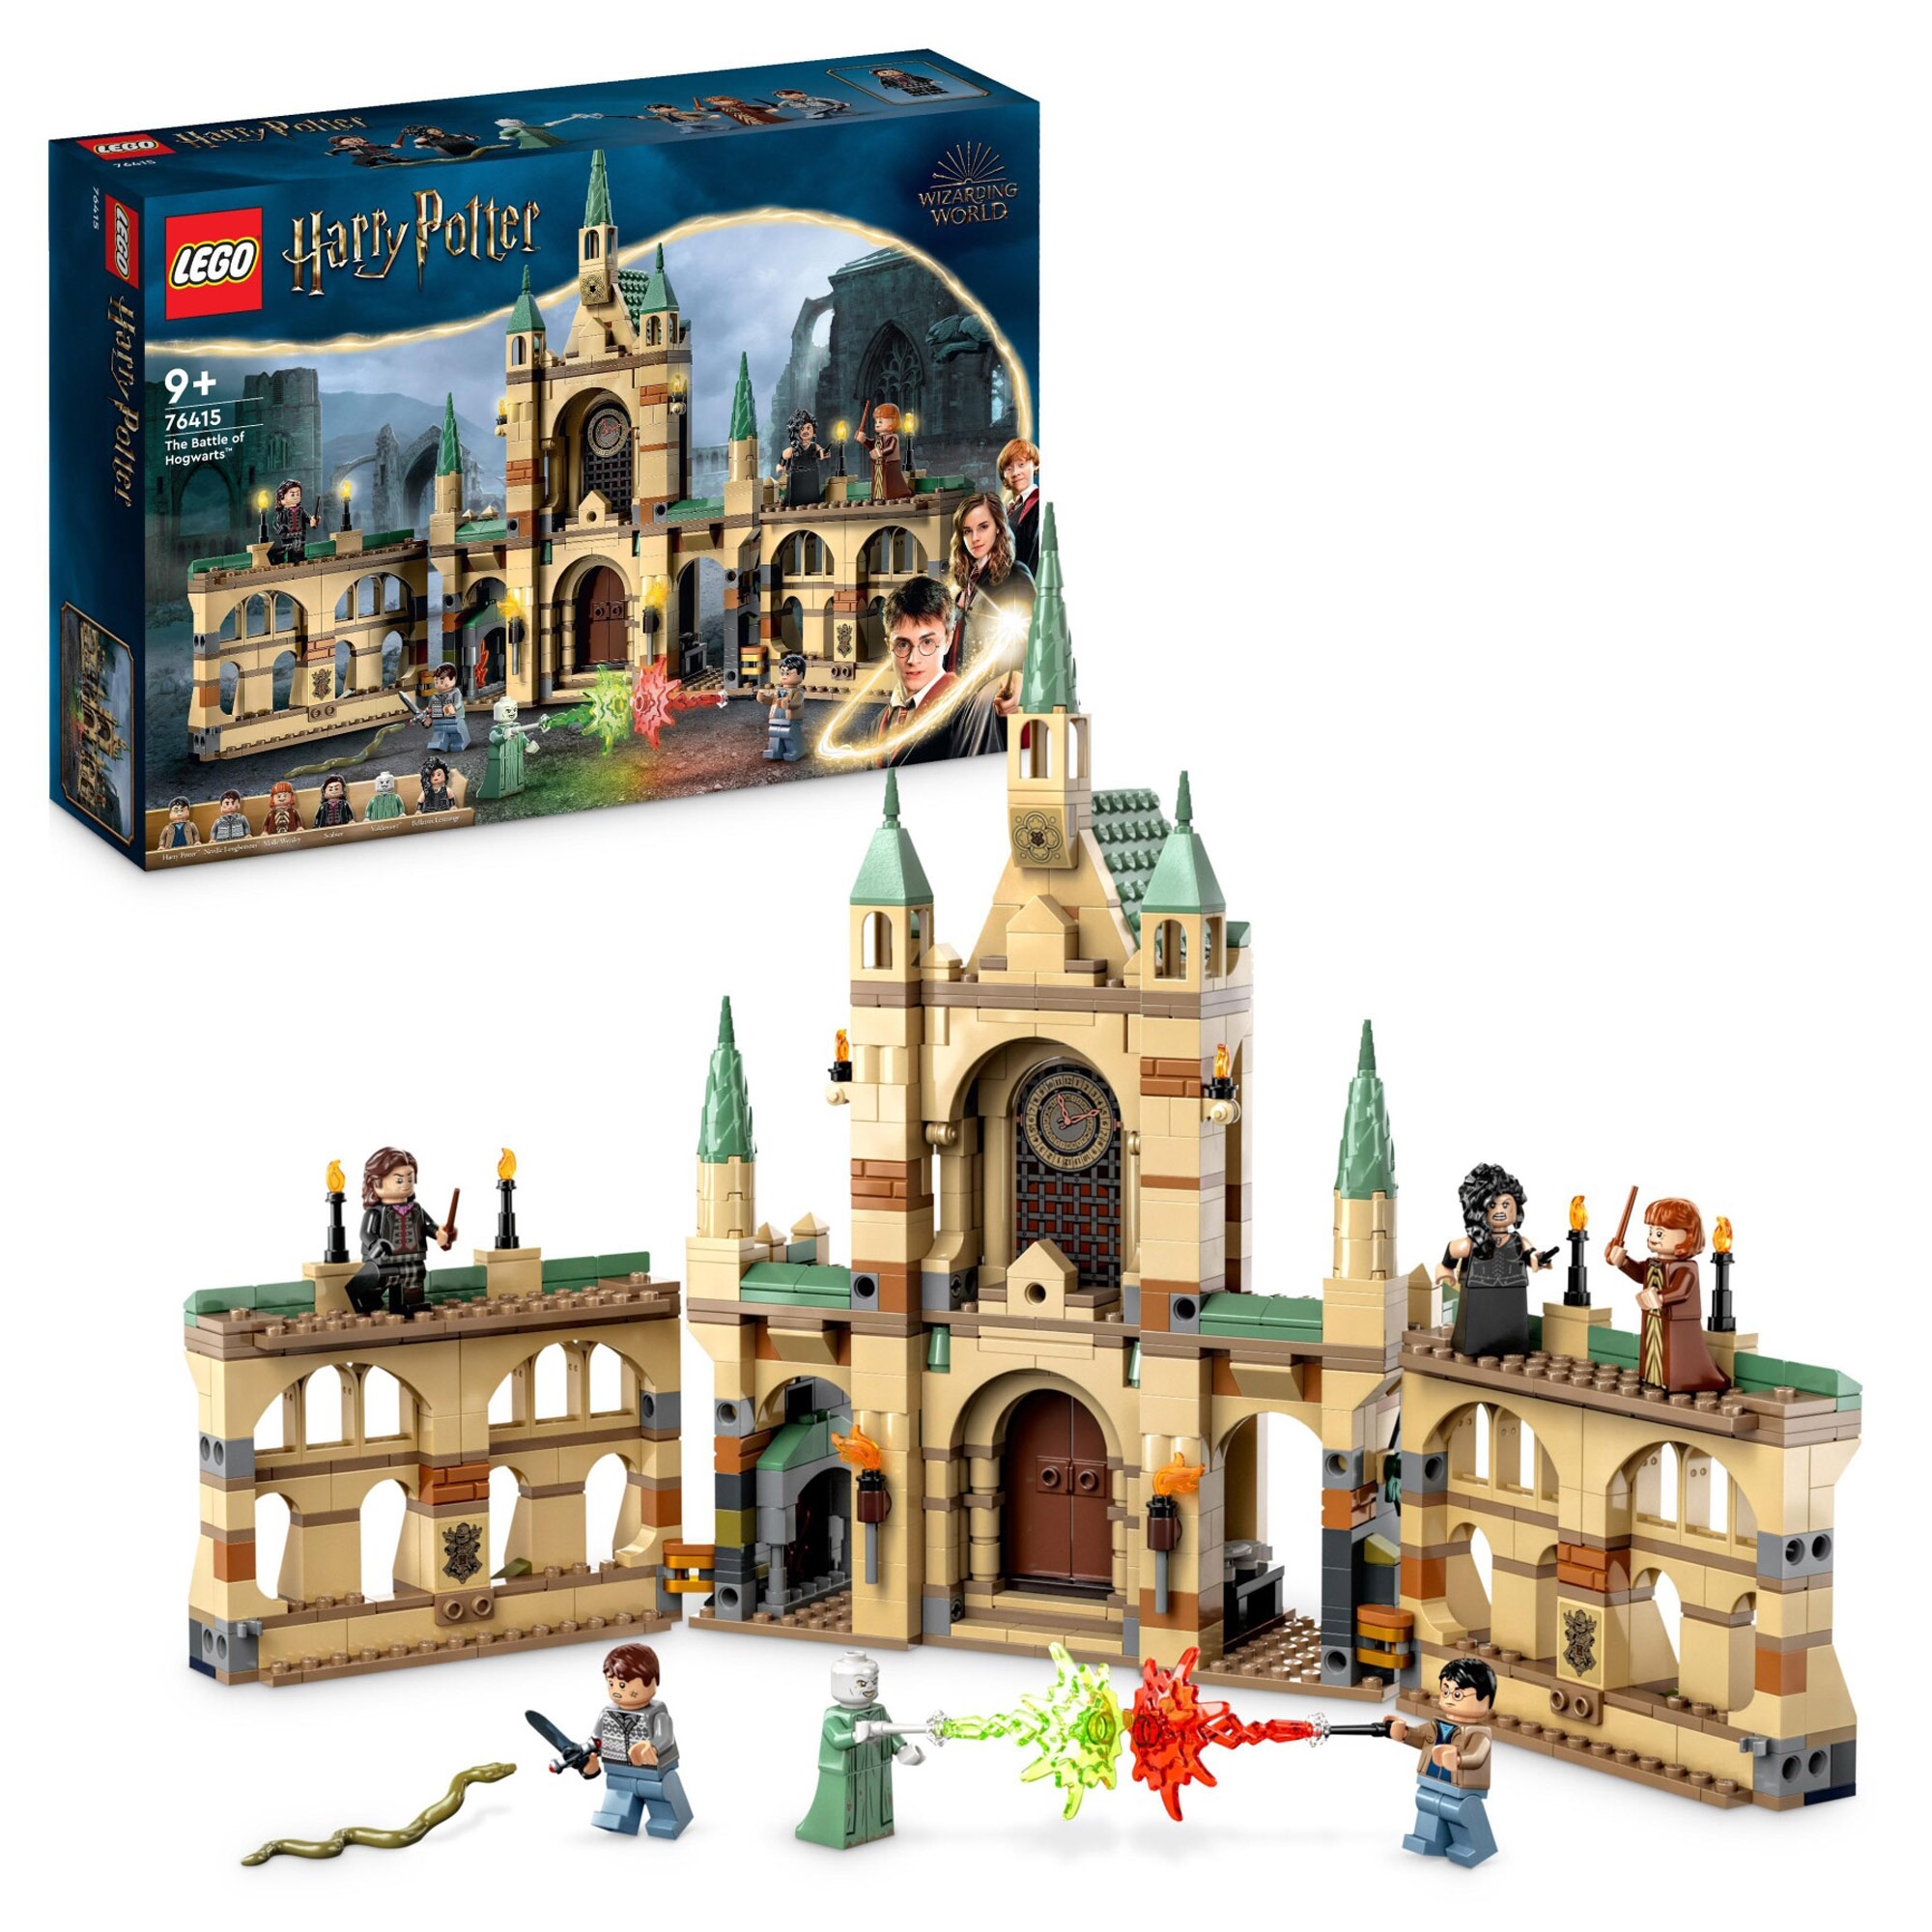 LEGO Harry Potter 76415 La battaglia di Hogwarts, castello con